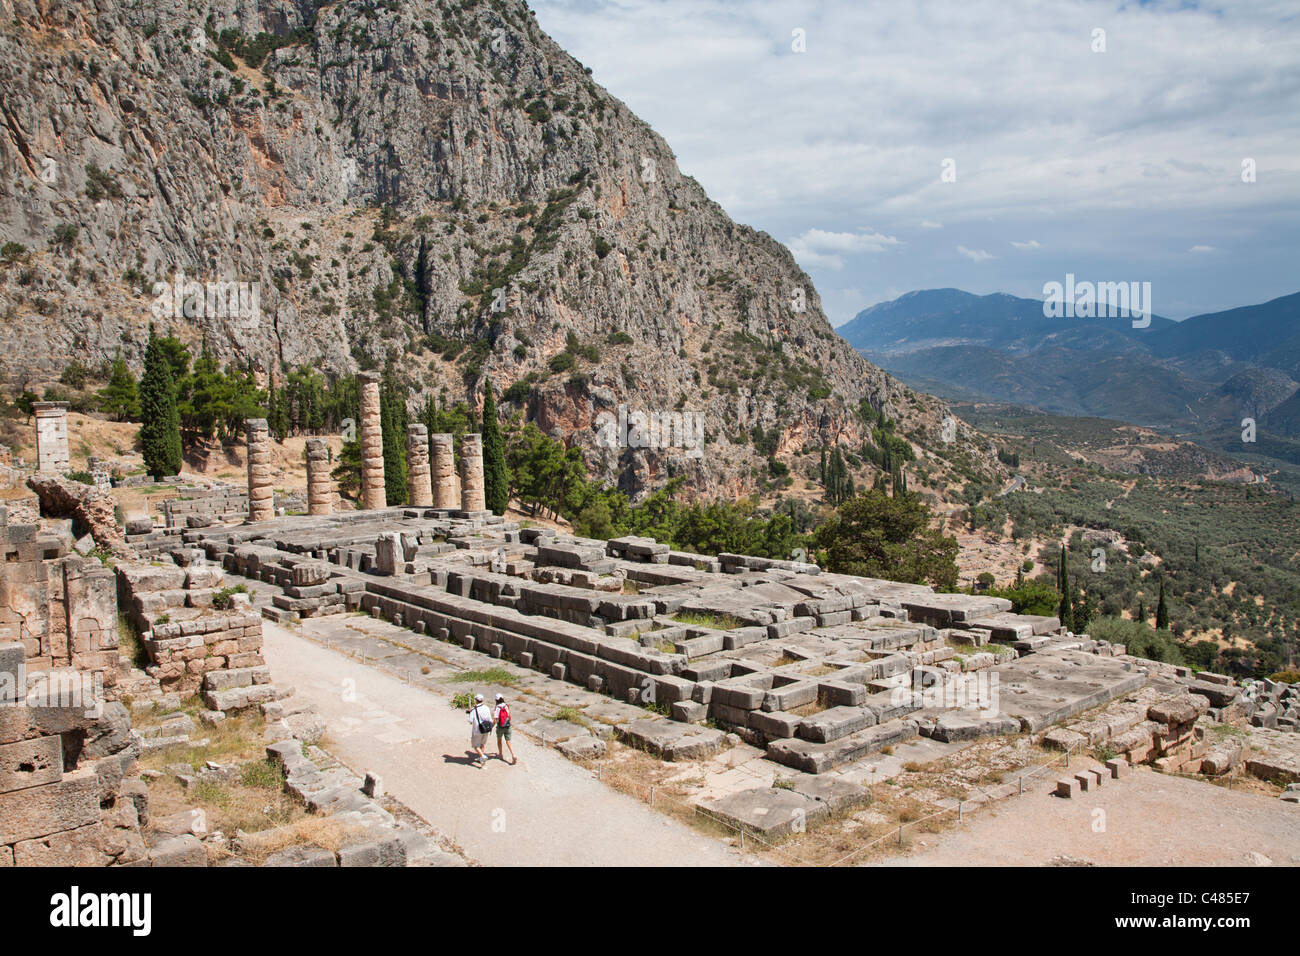 The Temple of Apollo, Delphi Greece Stock Photo